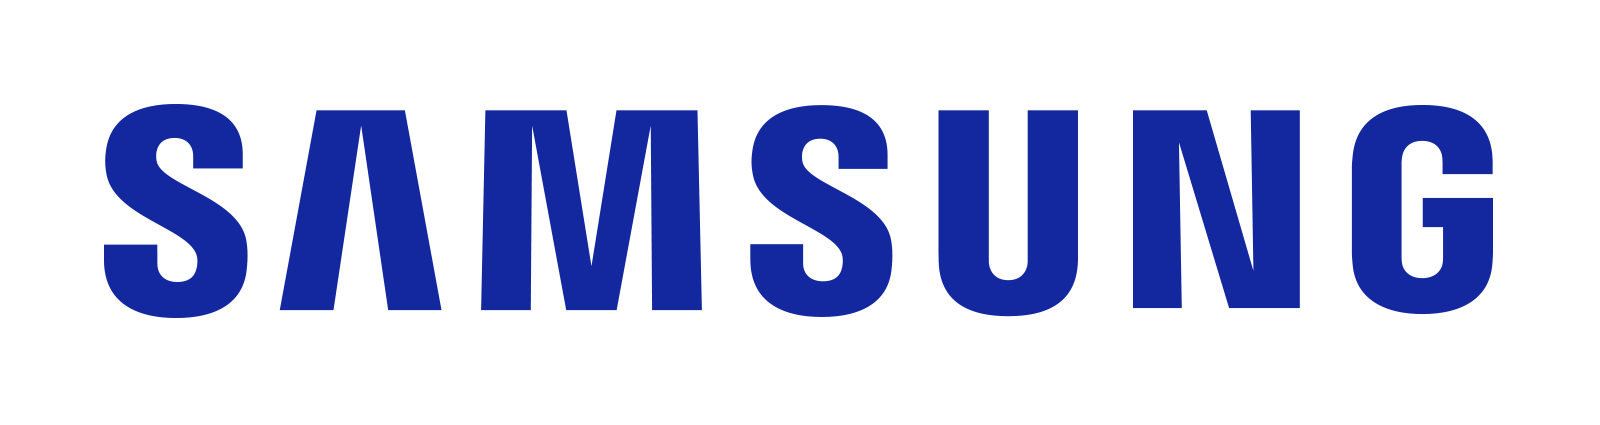 Online & Merchandising Specialist to Samsung!